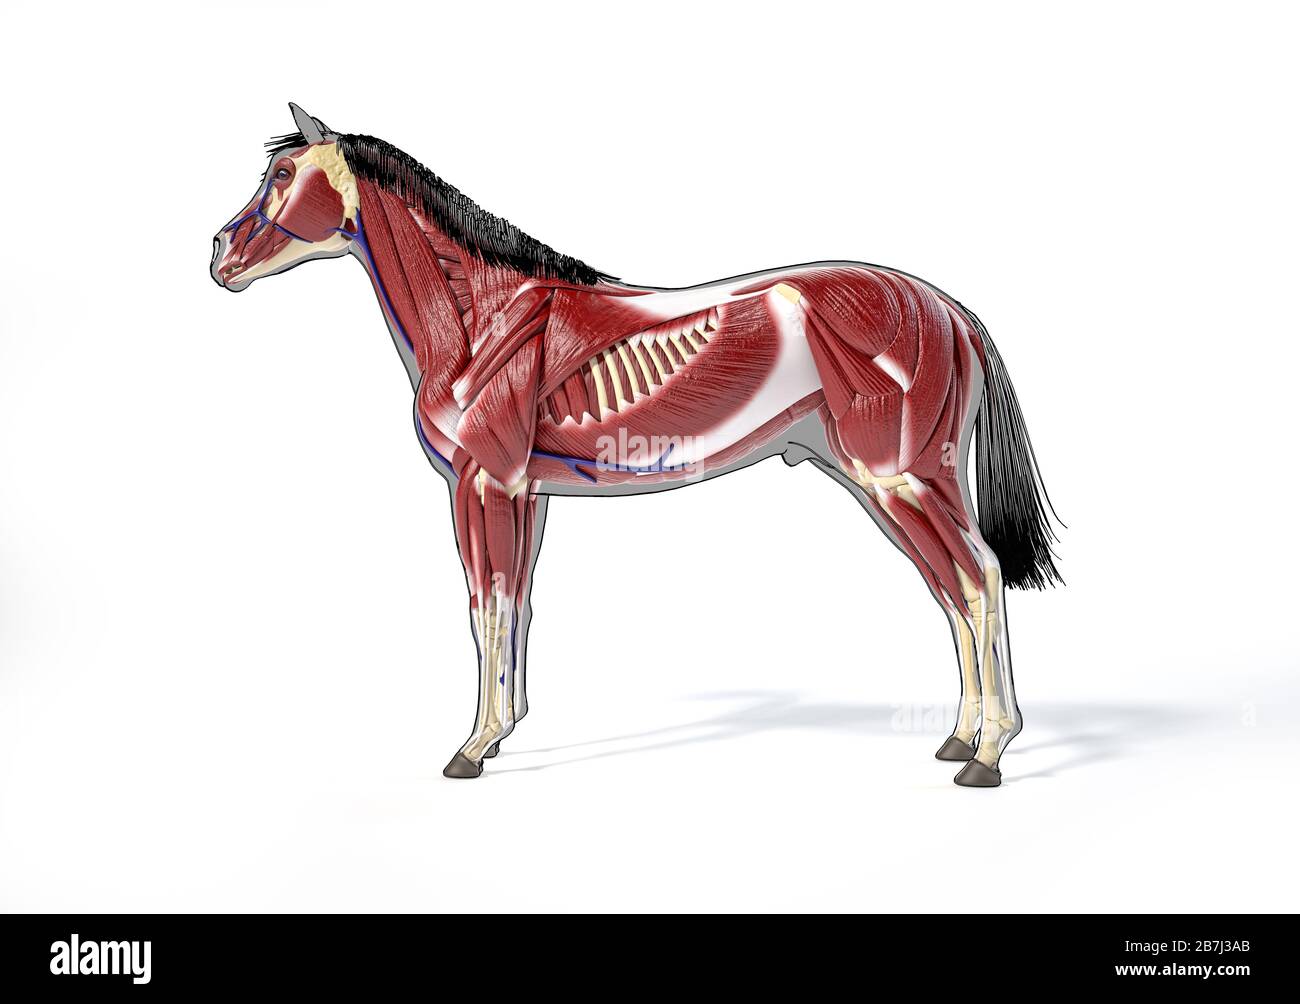 Pferdeanatomie. Muskulöses System über grauer Silhouette und schwarzem Umriss. Seitenansicht auf weißem Hintergrund. Beschneidungspfad enthalten. Stockfoto